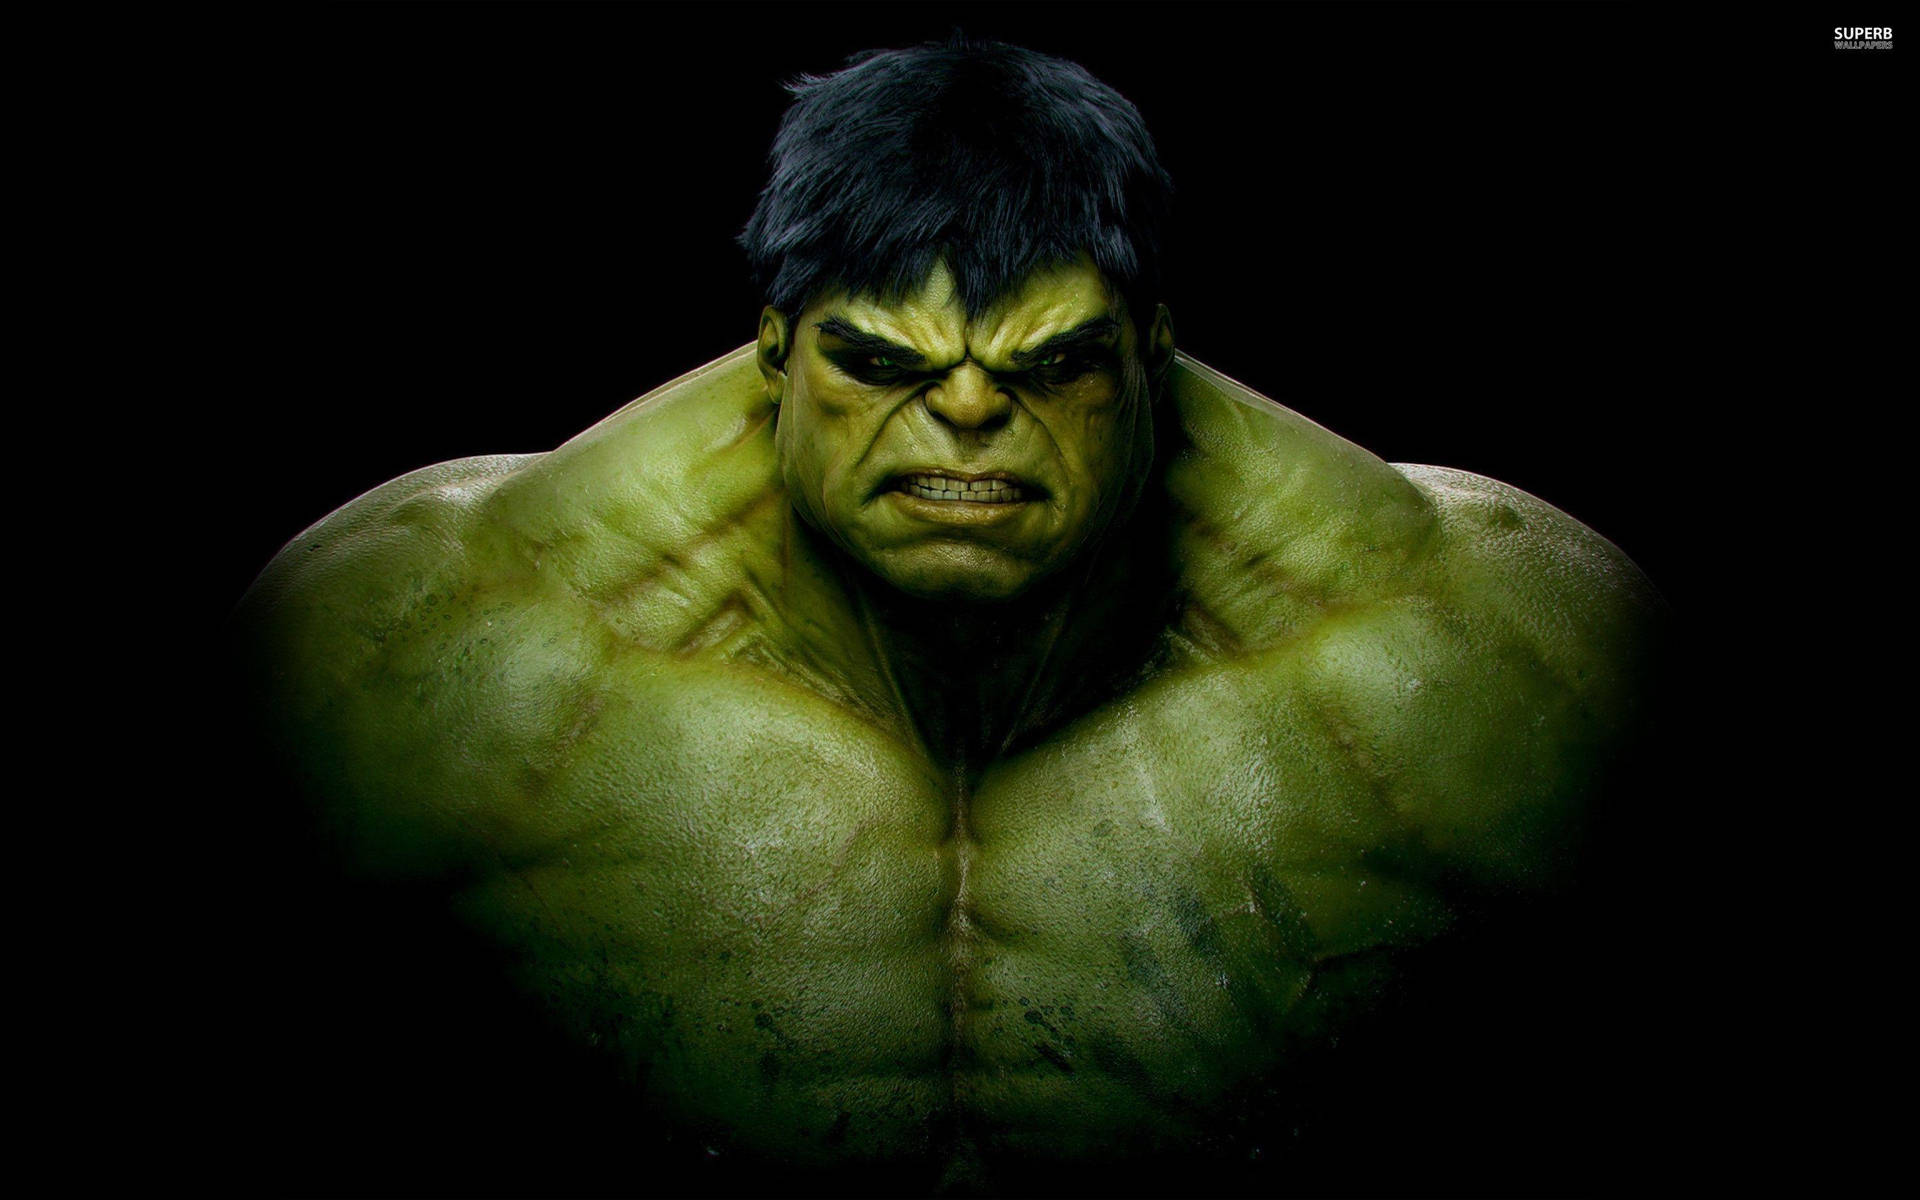 The Hulk's Alter Ego - Bruce Banner